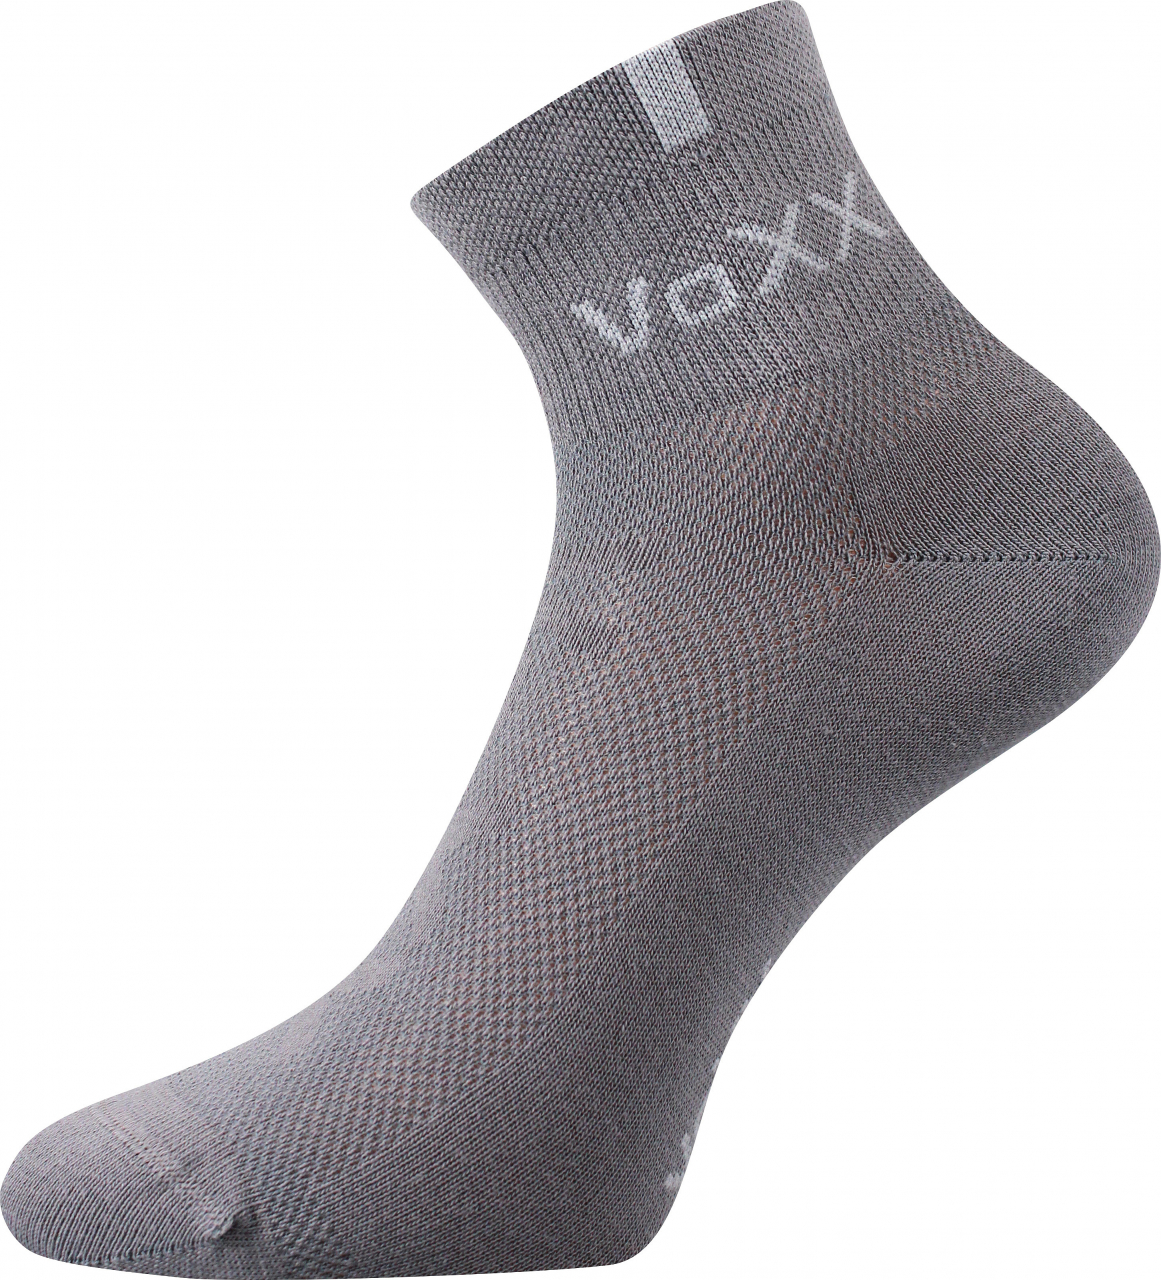 Ponožky s elastanem Voxx Fredy - šedé, 43-46